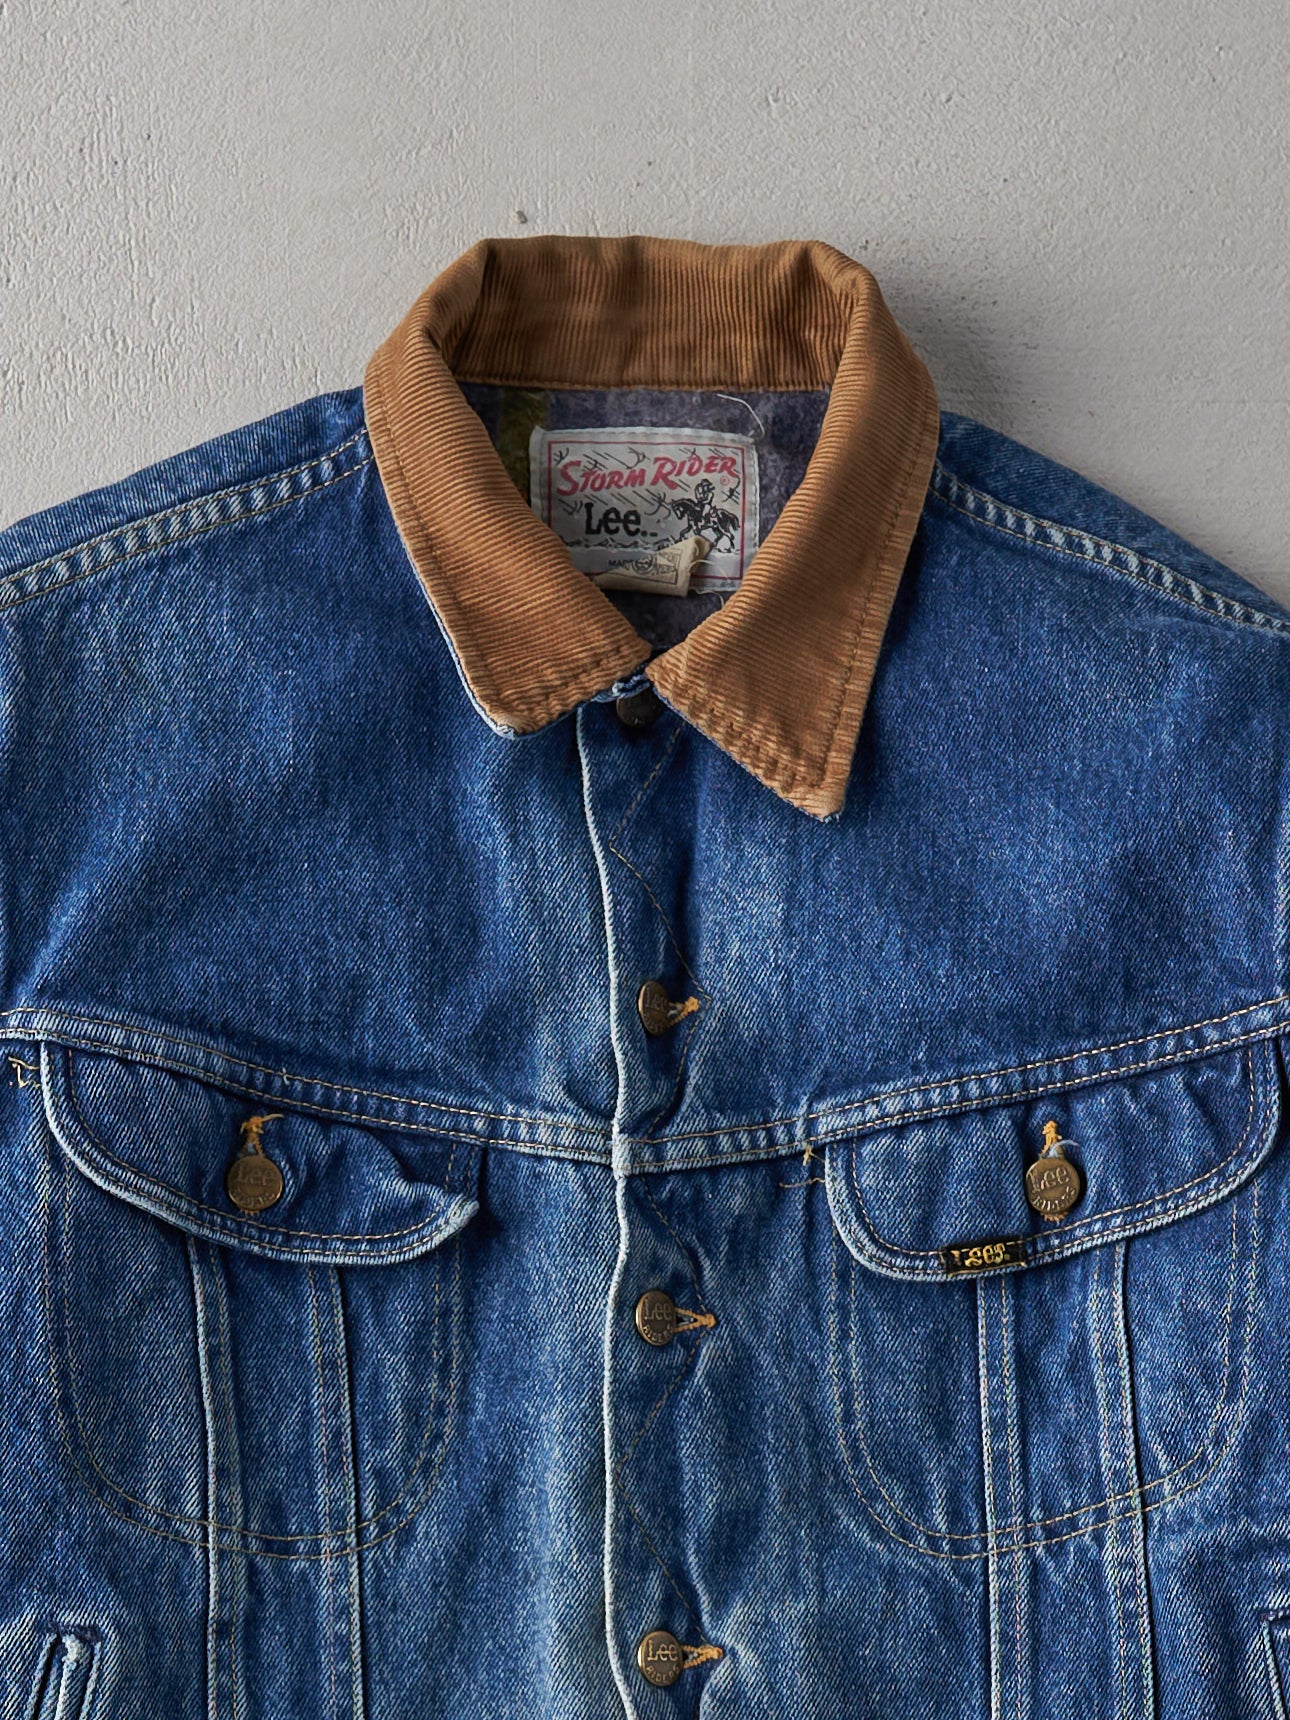 Vintage 70s Mid Wash LEE Storm Rider Blanket Lined Denim Jacket (M)